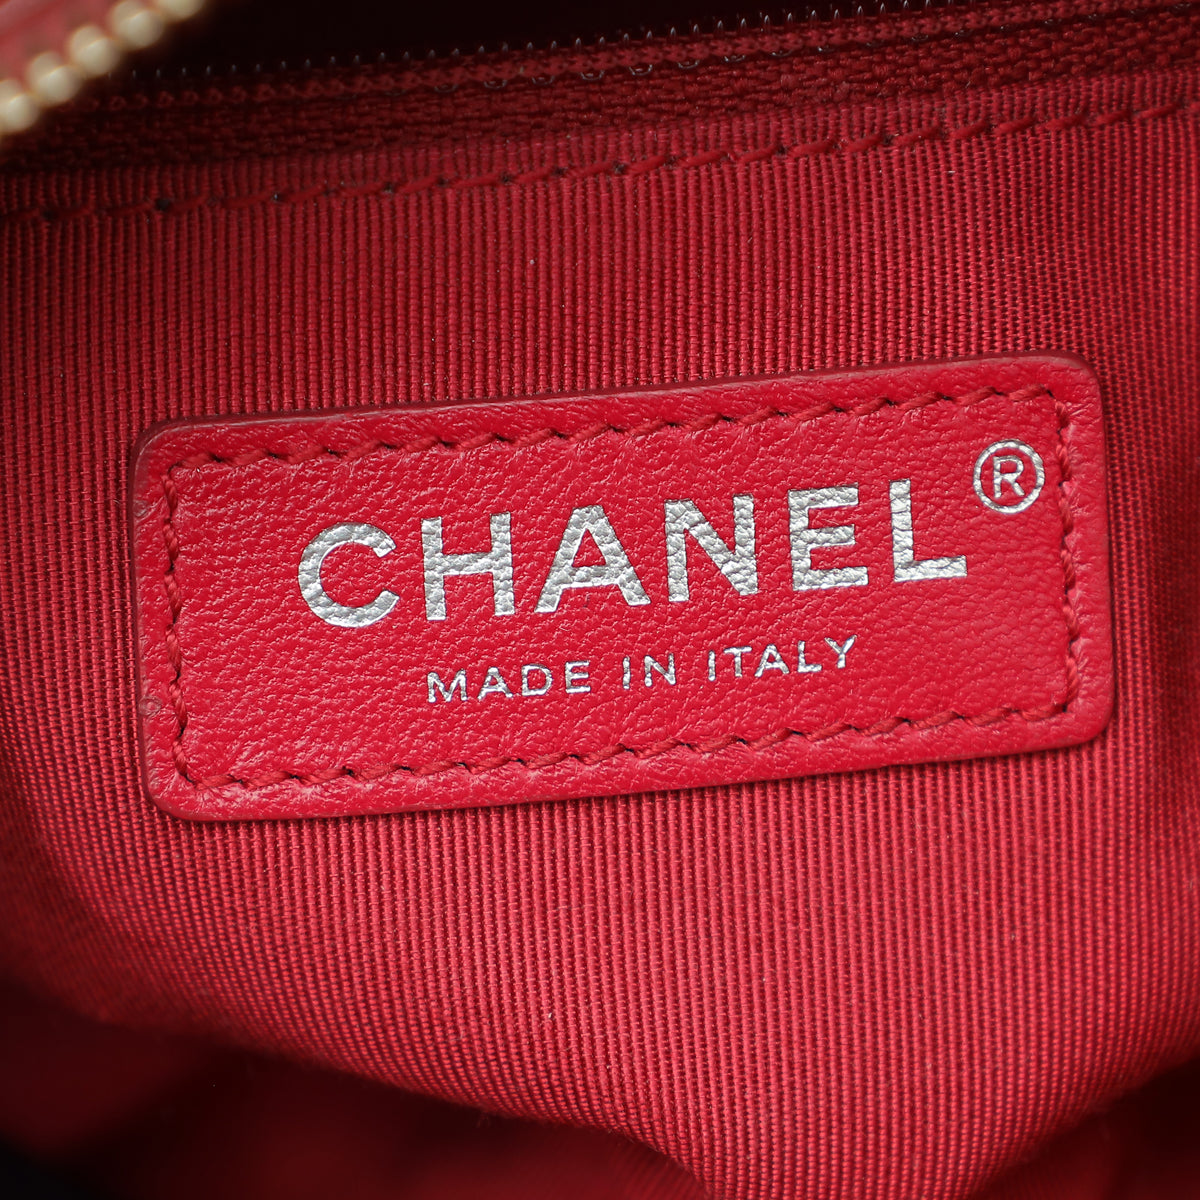 Chanel Tricolor Gabrielle Small Bag